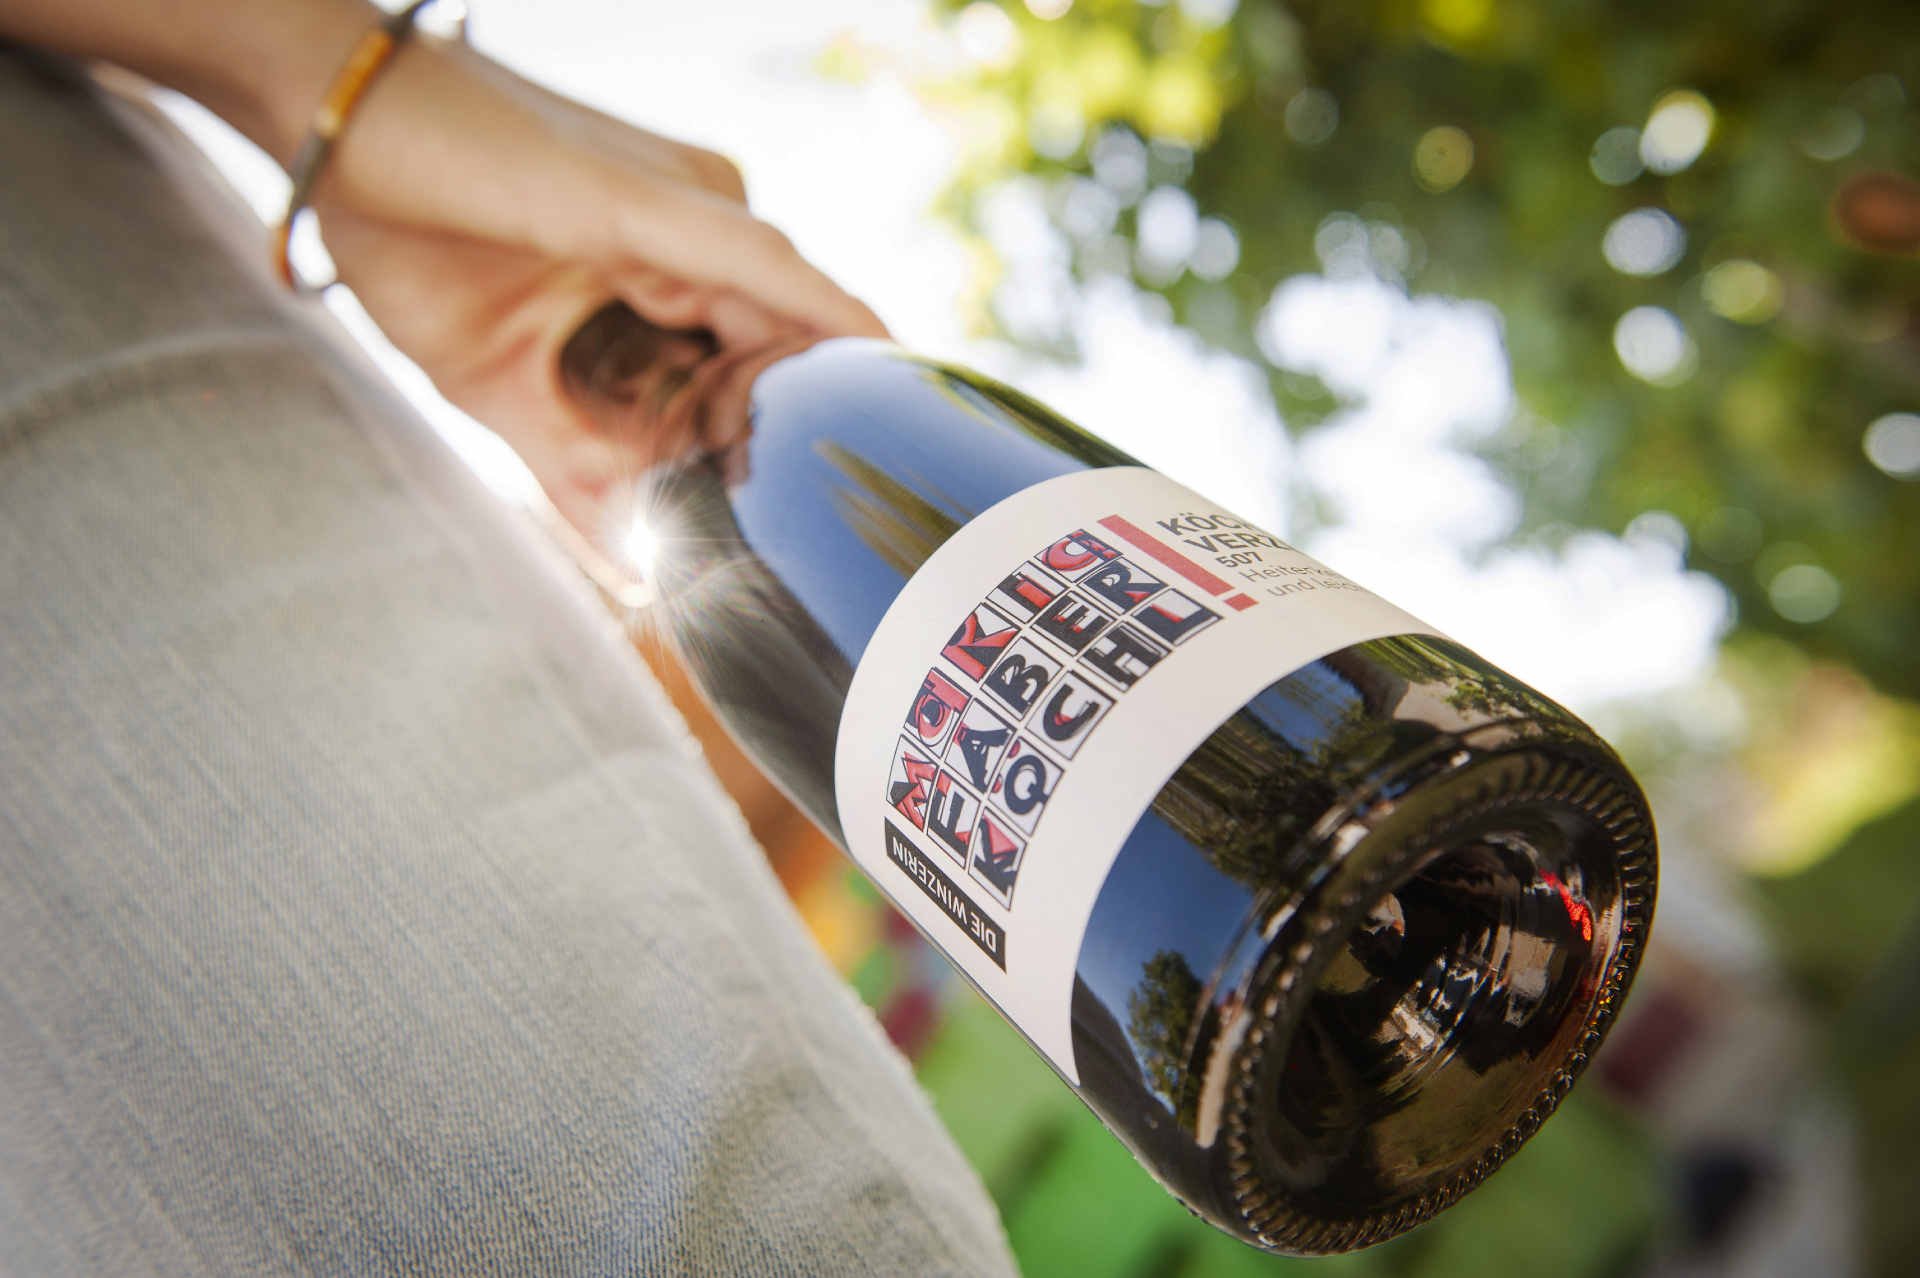 Faber produziert fein strukturierte und elegante Weiß- und Rotweine am Weingut.